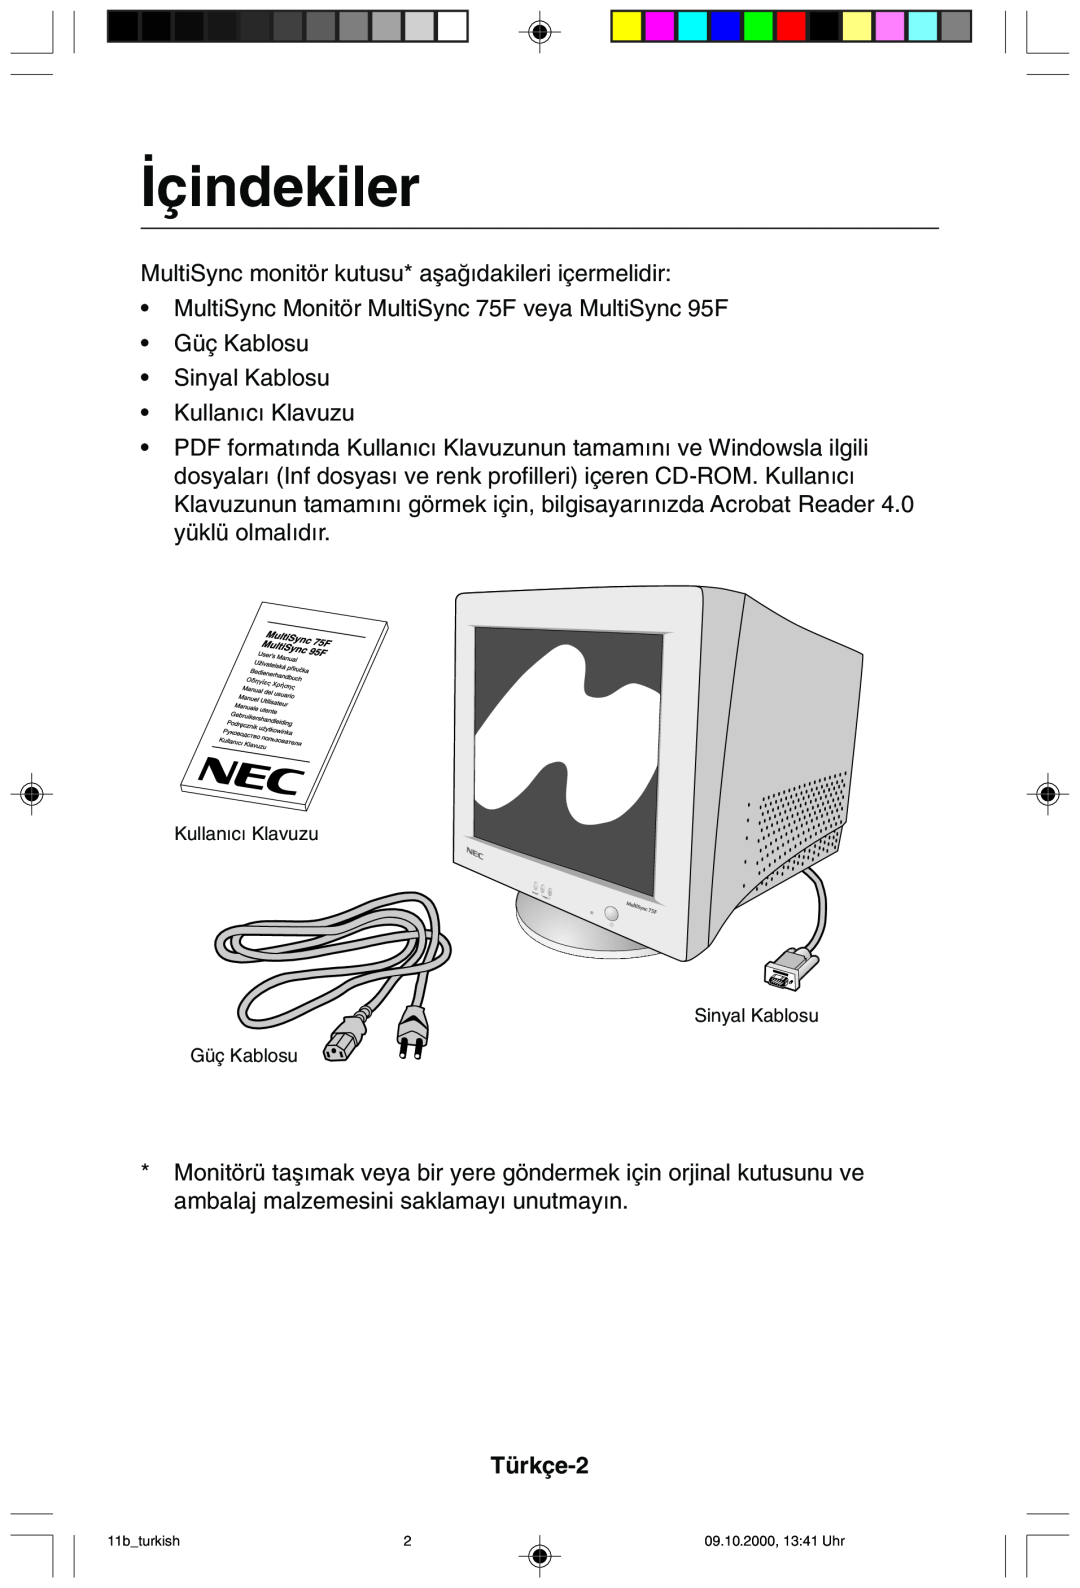 NEC 95F user manual ∑çindekiler, Türkçe-2 